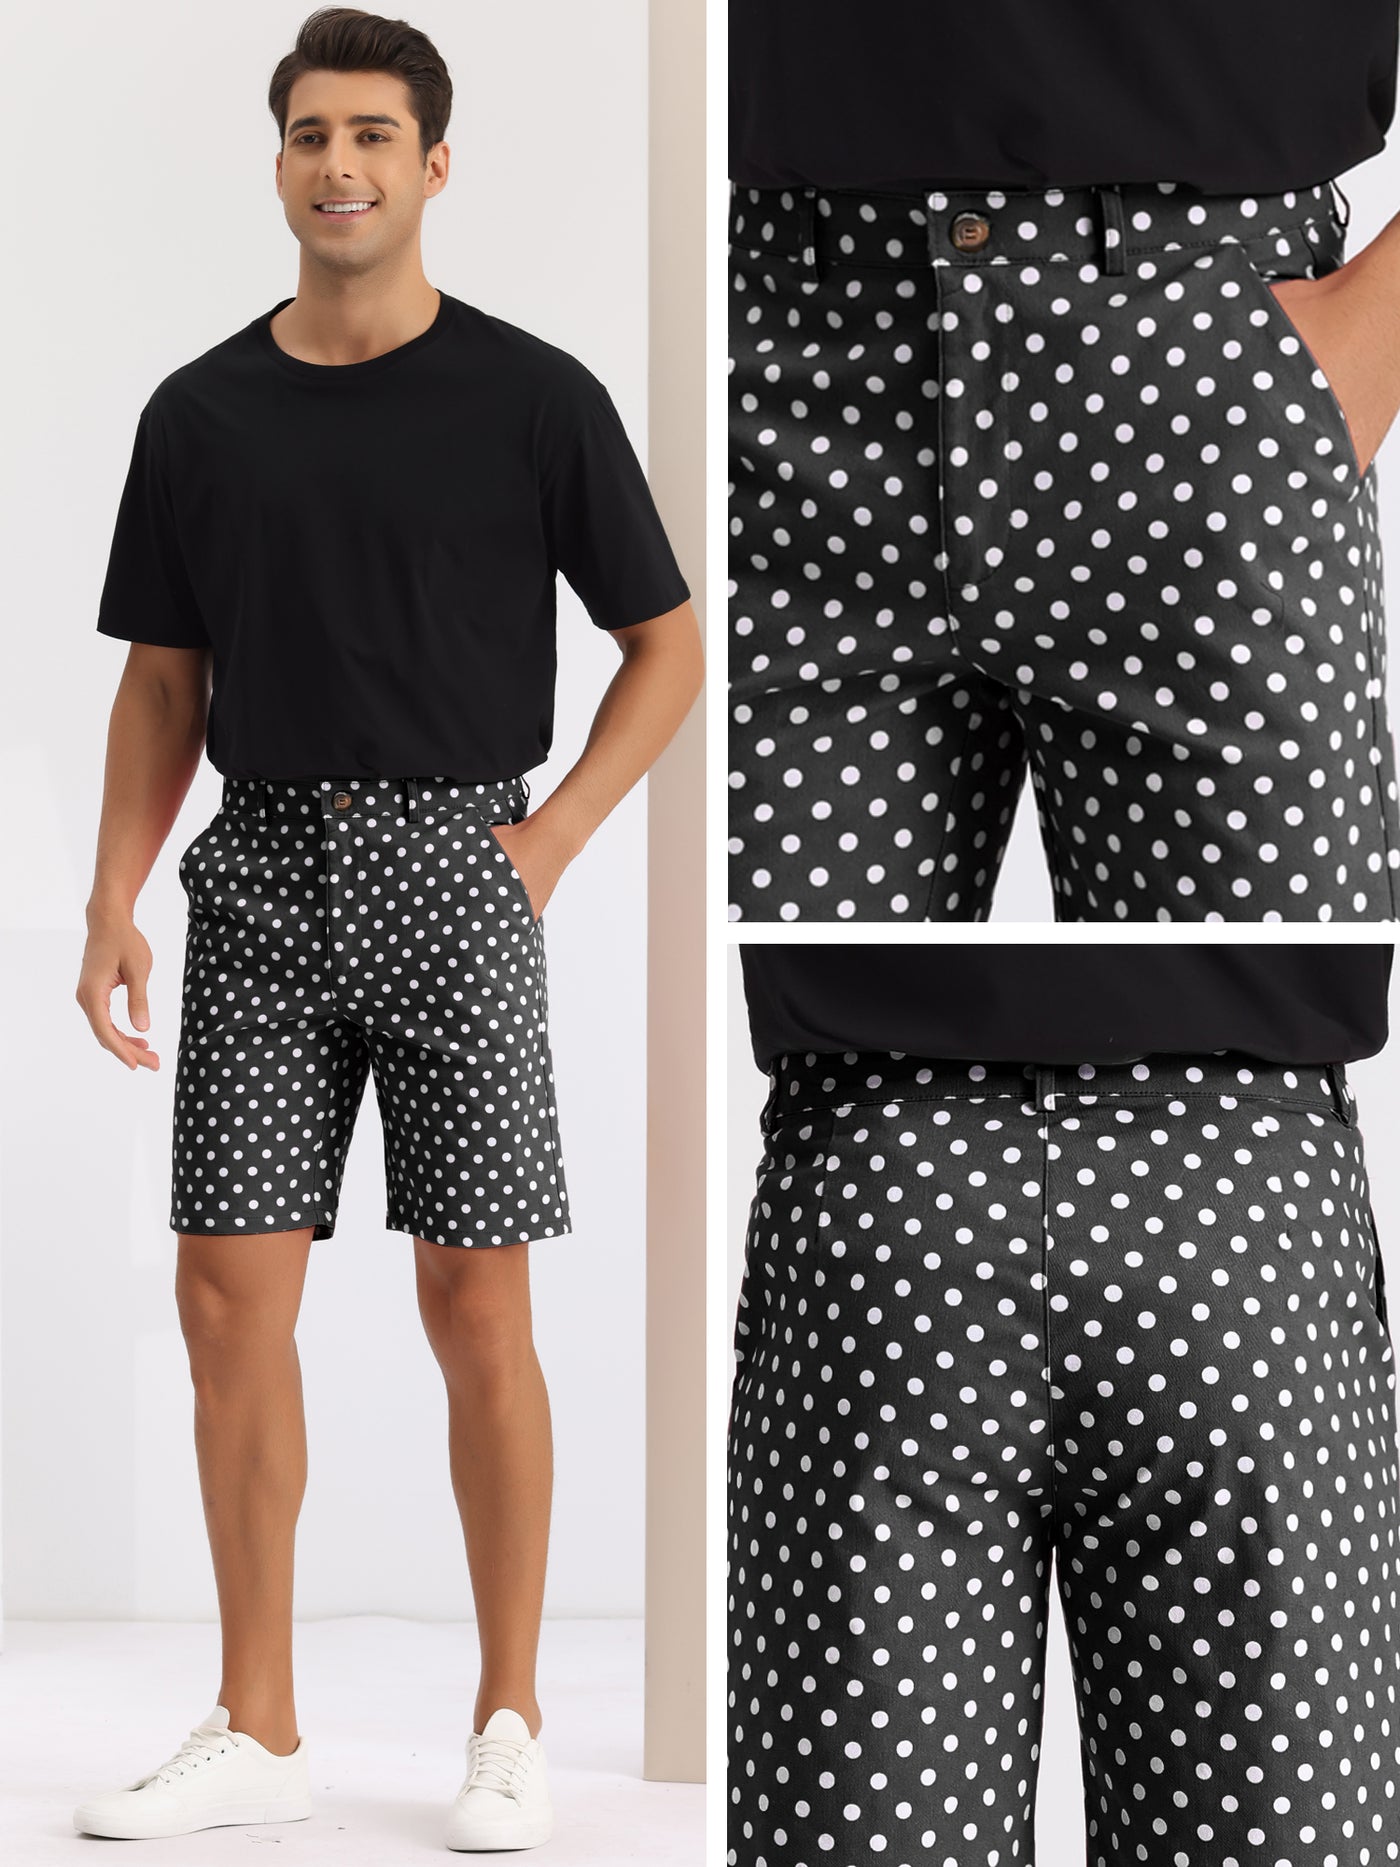 Bublédon Polka Dots Summer Above Knee Printed Golf Shorts